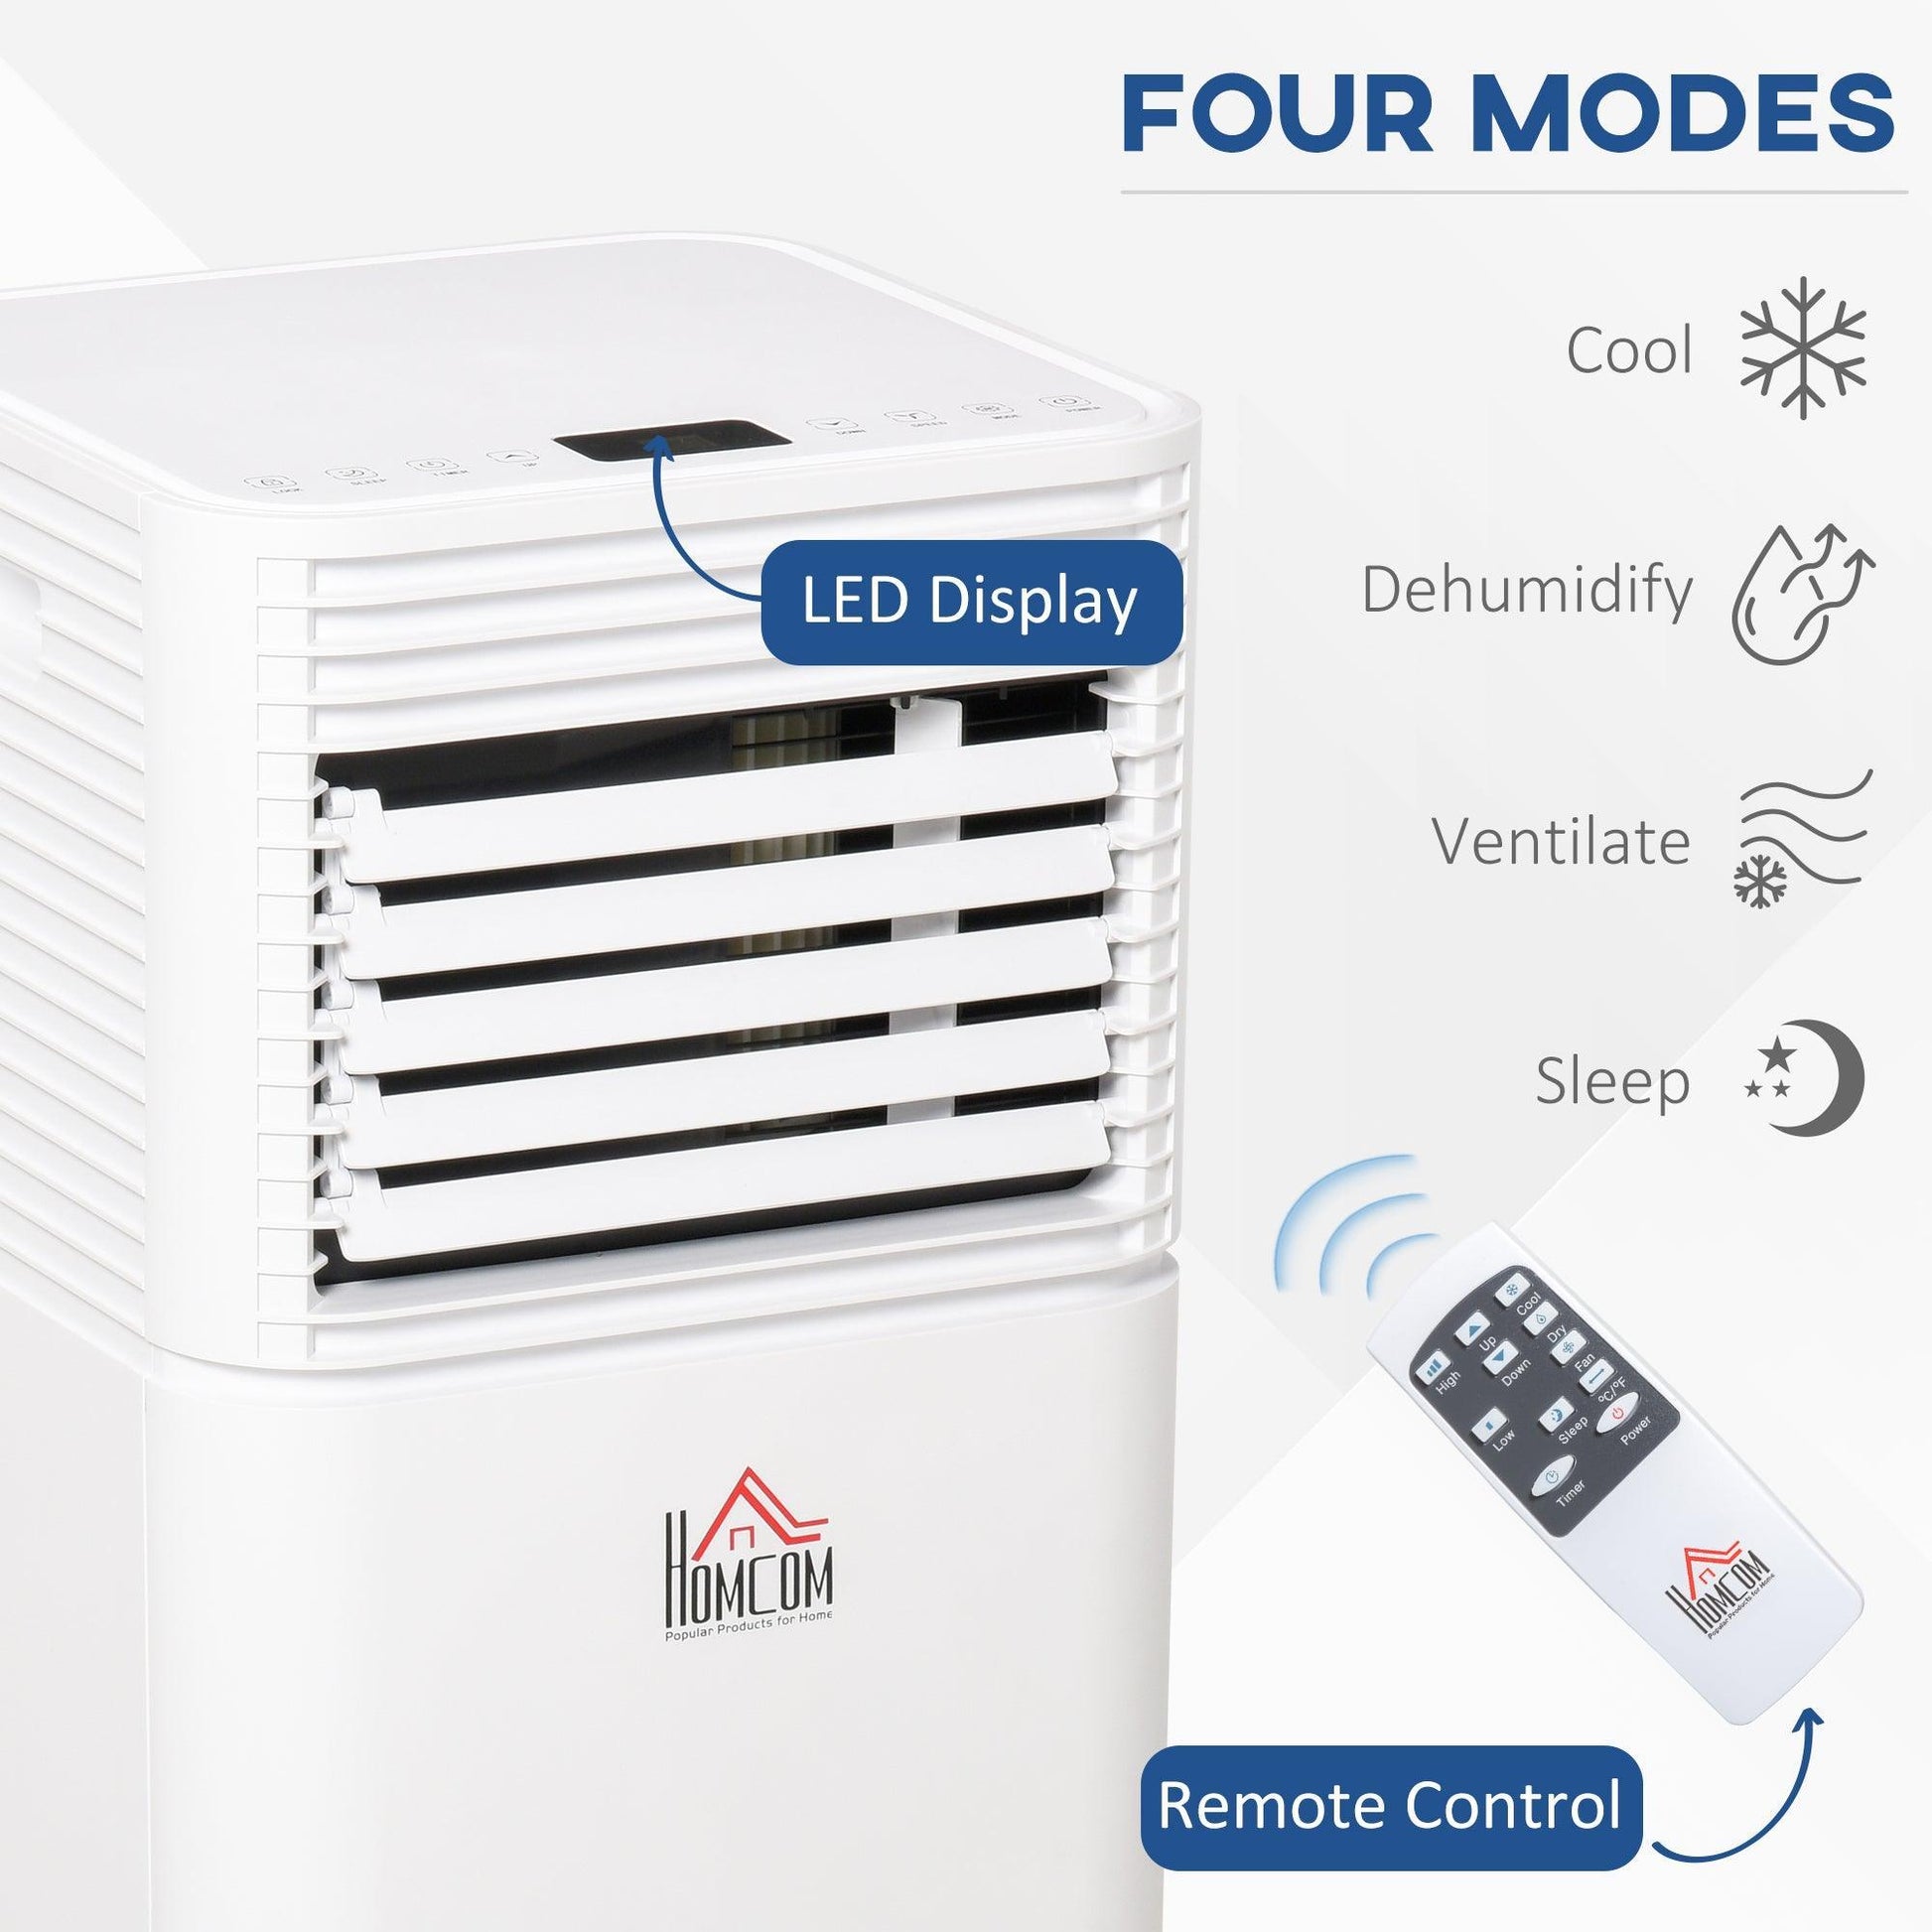 HOMCOM 9000 BTU Portable Air Conditioner - ALL4U RETAILER LTD